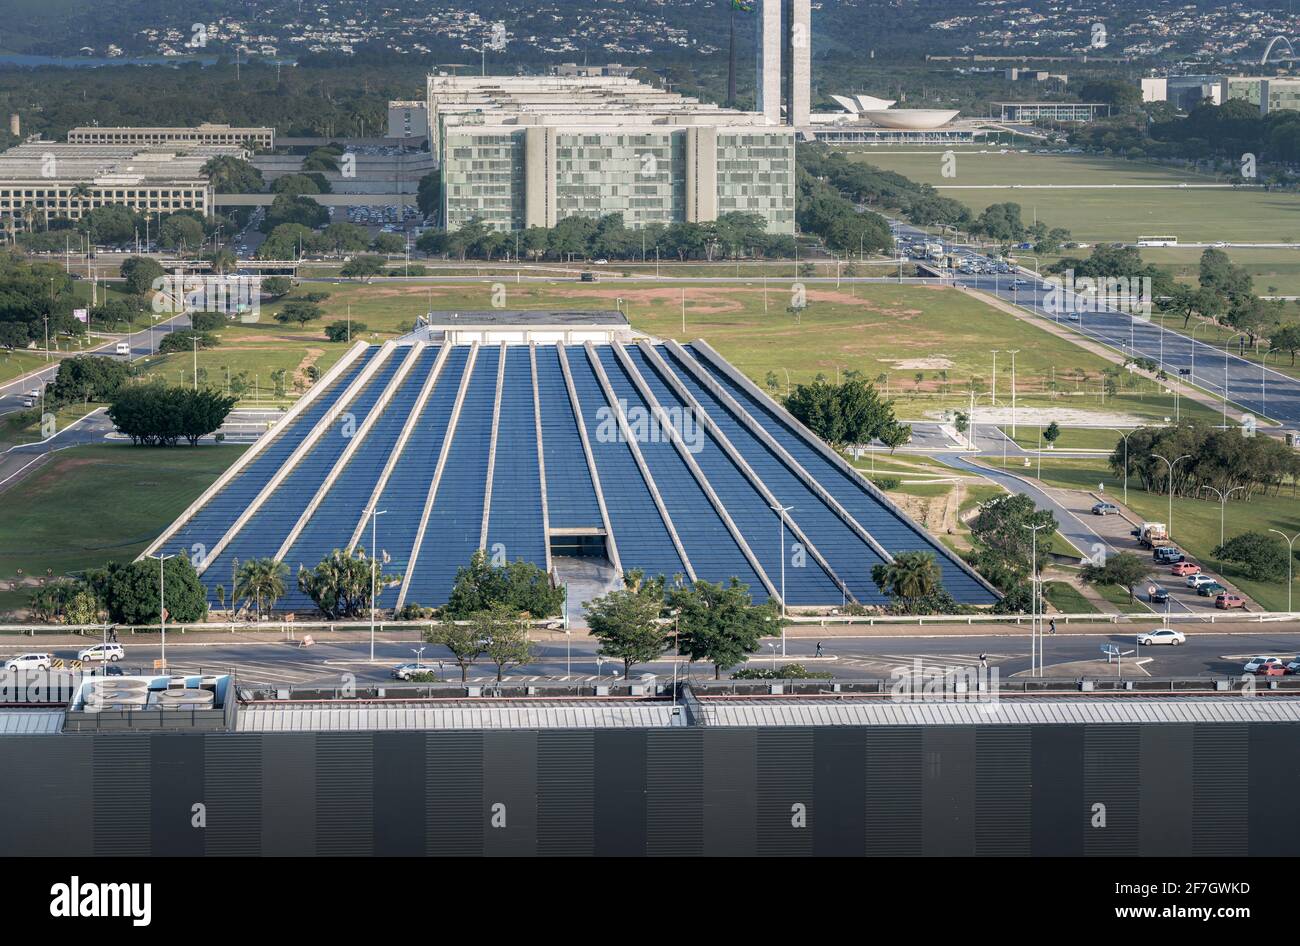 Vue aérienne du théâtre national de Brasilia et de Claudio Santoro - Brasilia, District fédéral, Brésil Banque D'Images